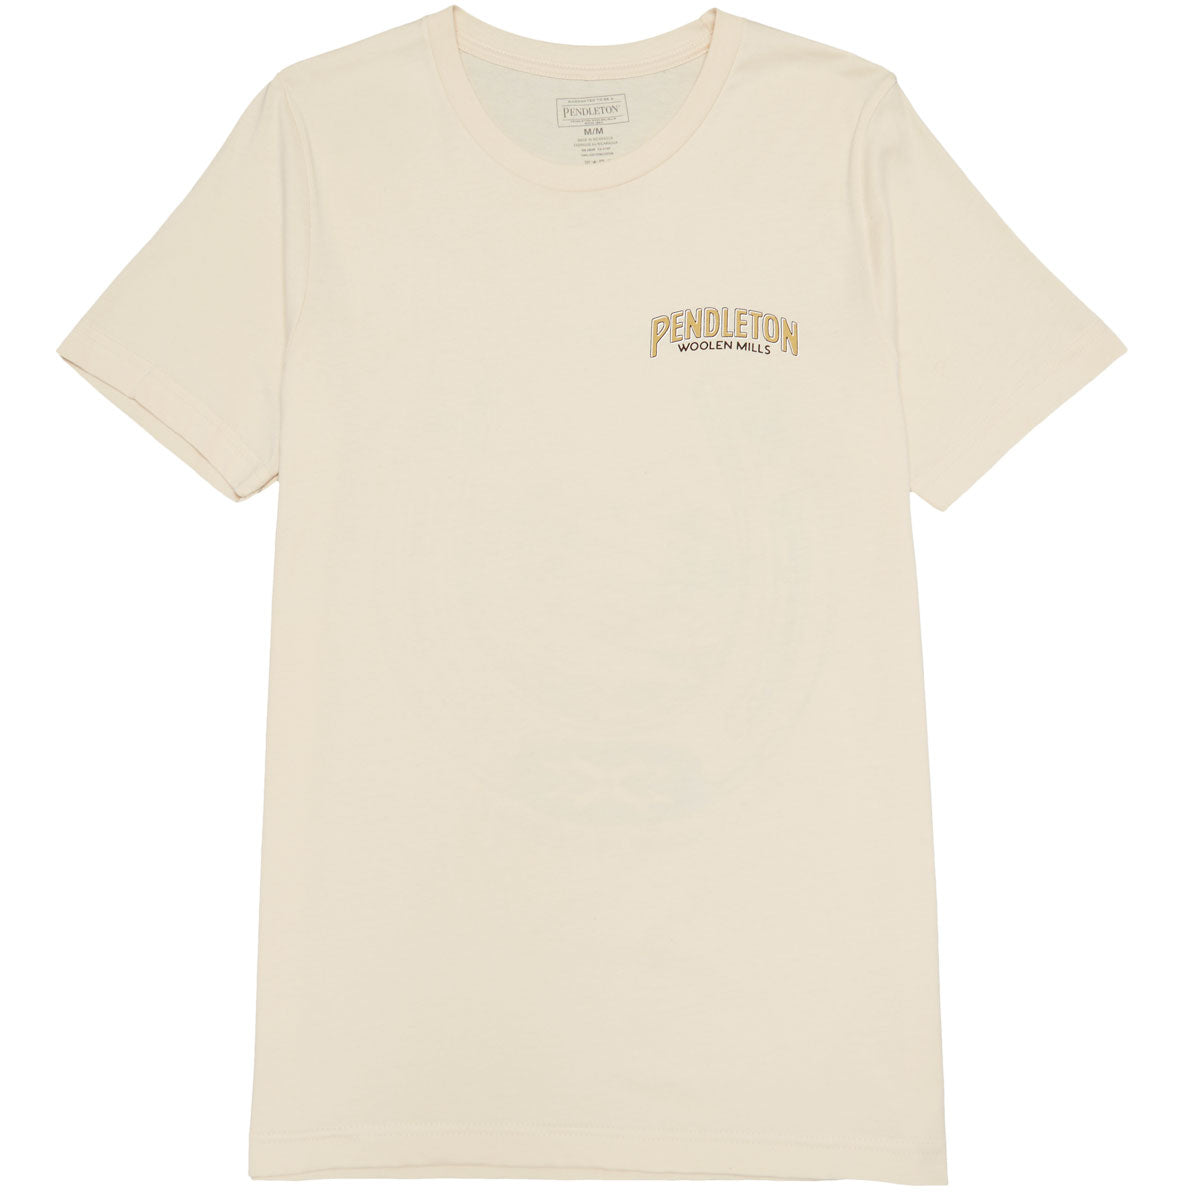 Pendleton Vintage Horseshoe T-Shirt - Soft Cream/Gold image 2